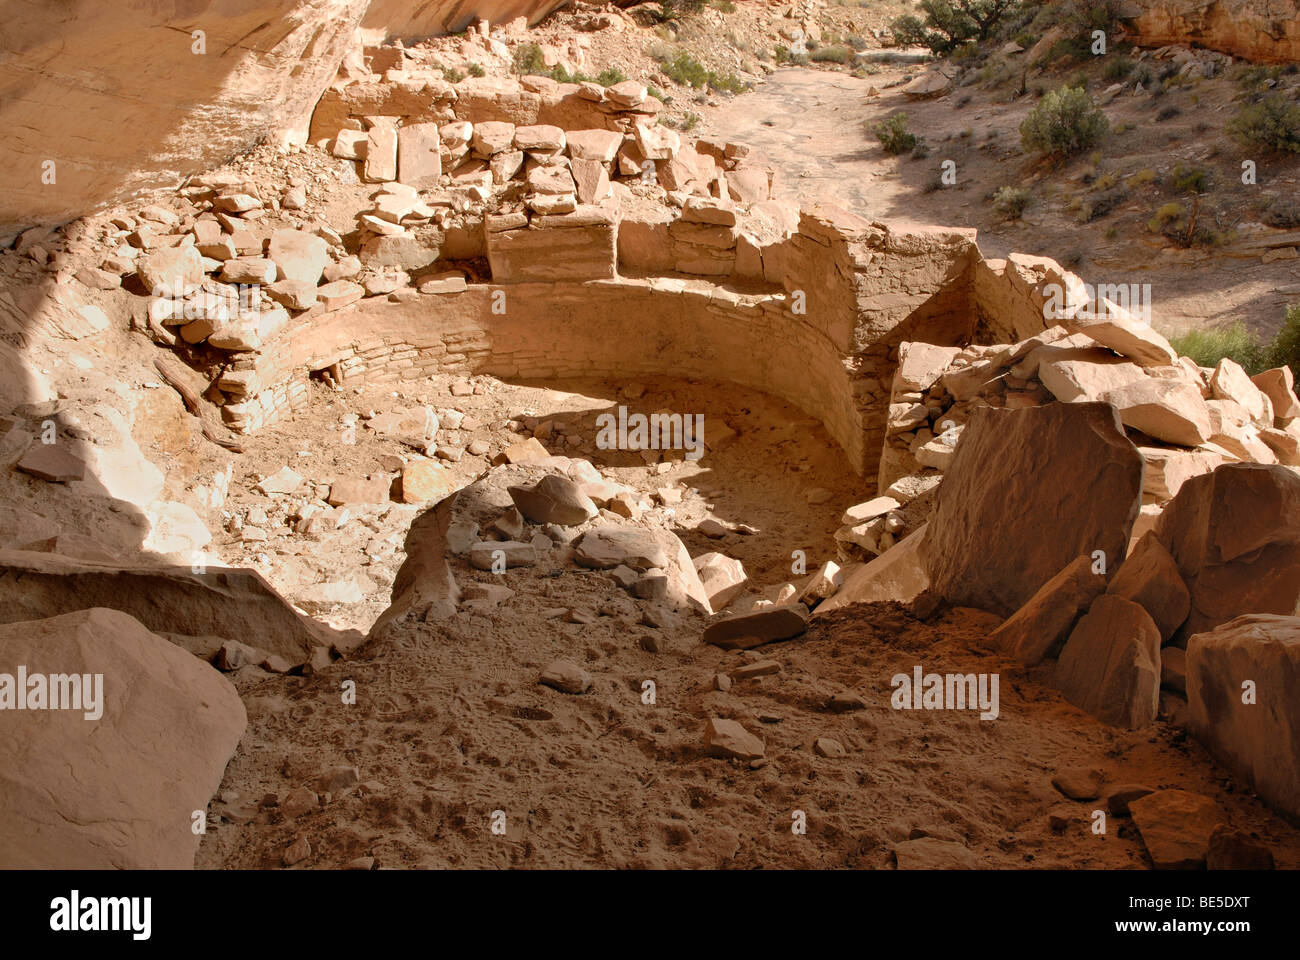 Restos históricos de una kiva, sitio cultural de los indios anasazi alrededor de 1100 AD, Cold Springs cueva cerca de Bluff, Utah, EE.UU. Foto de stock